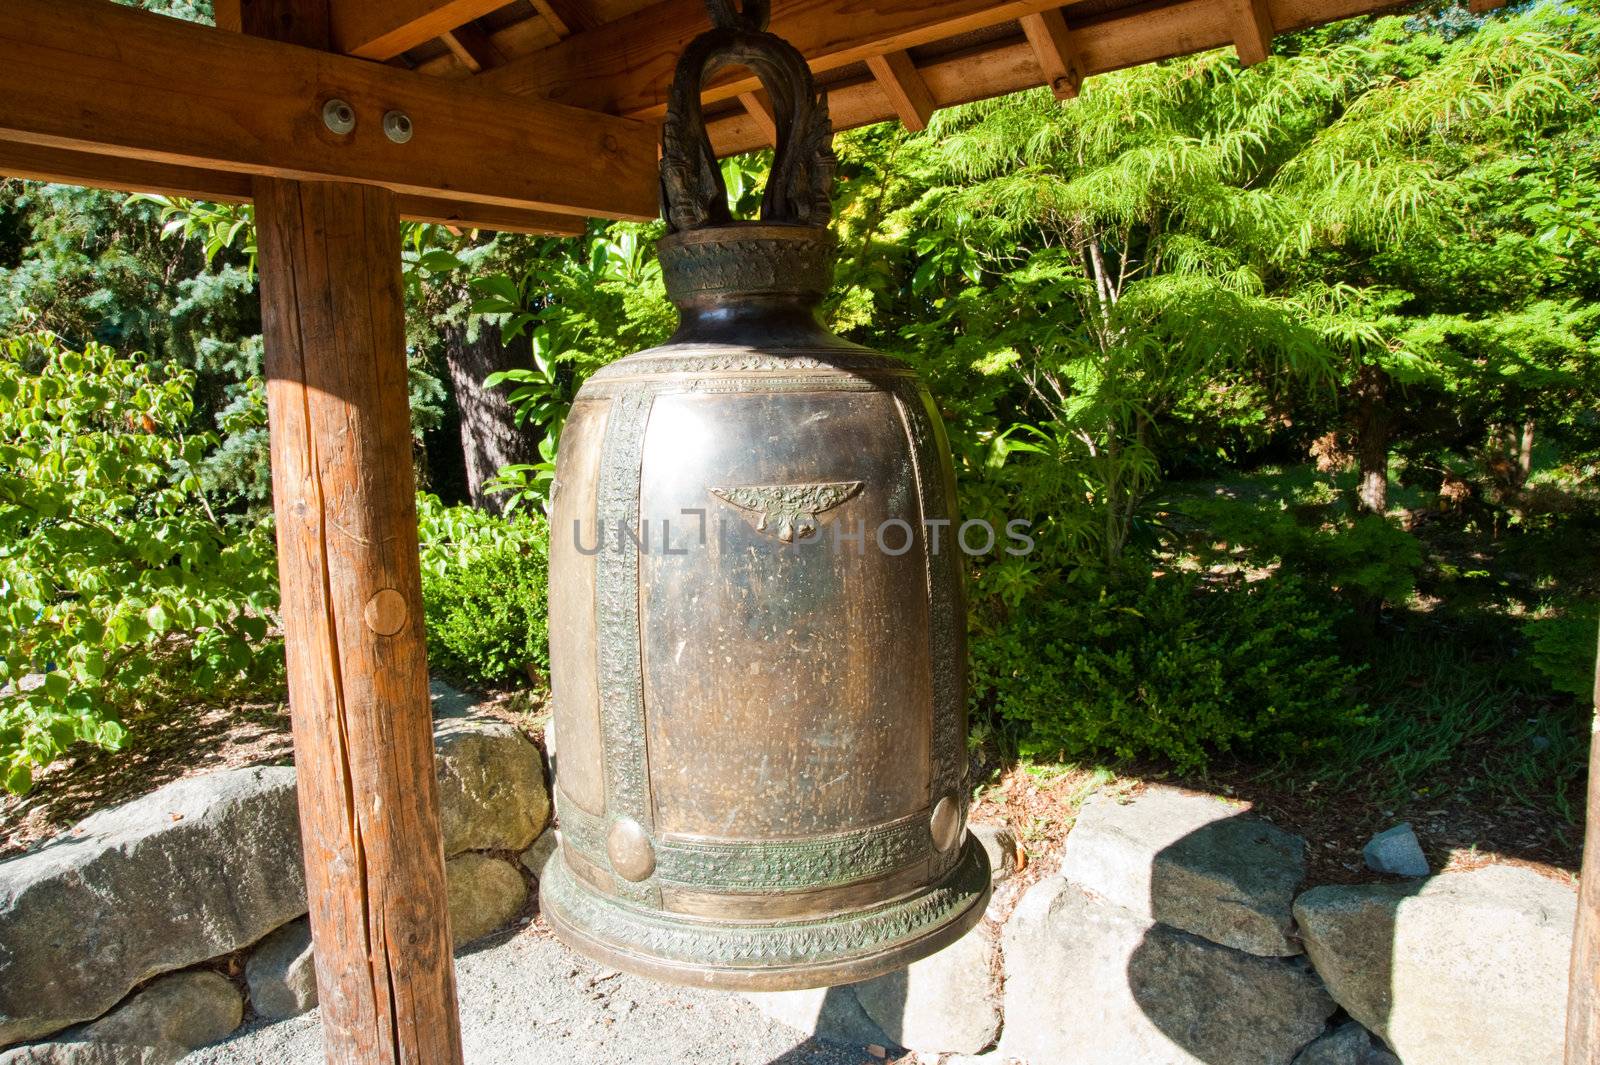 Kubota Garden bell by jaimepharr